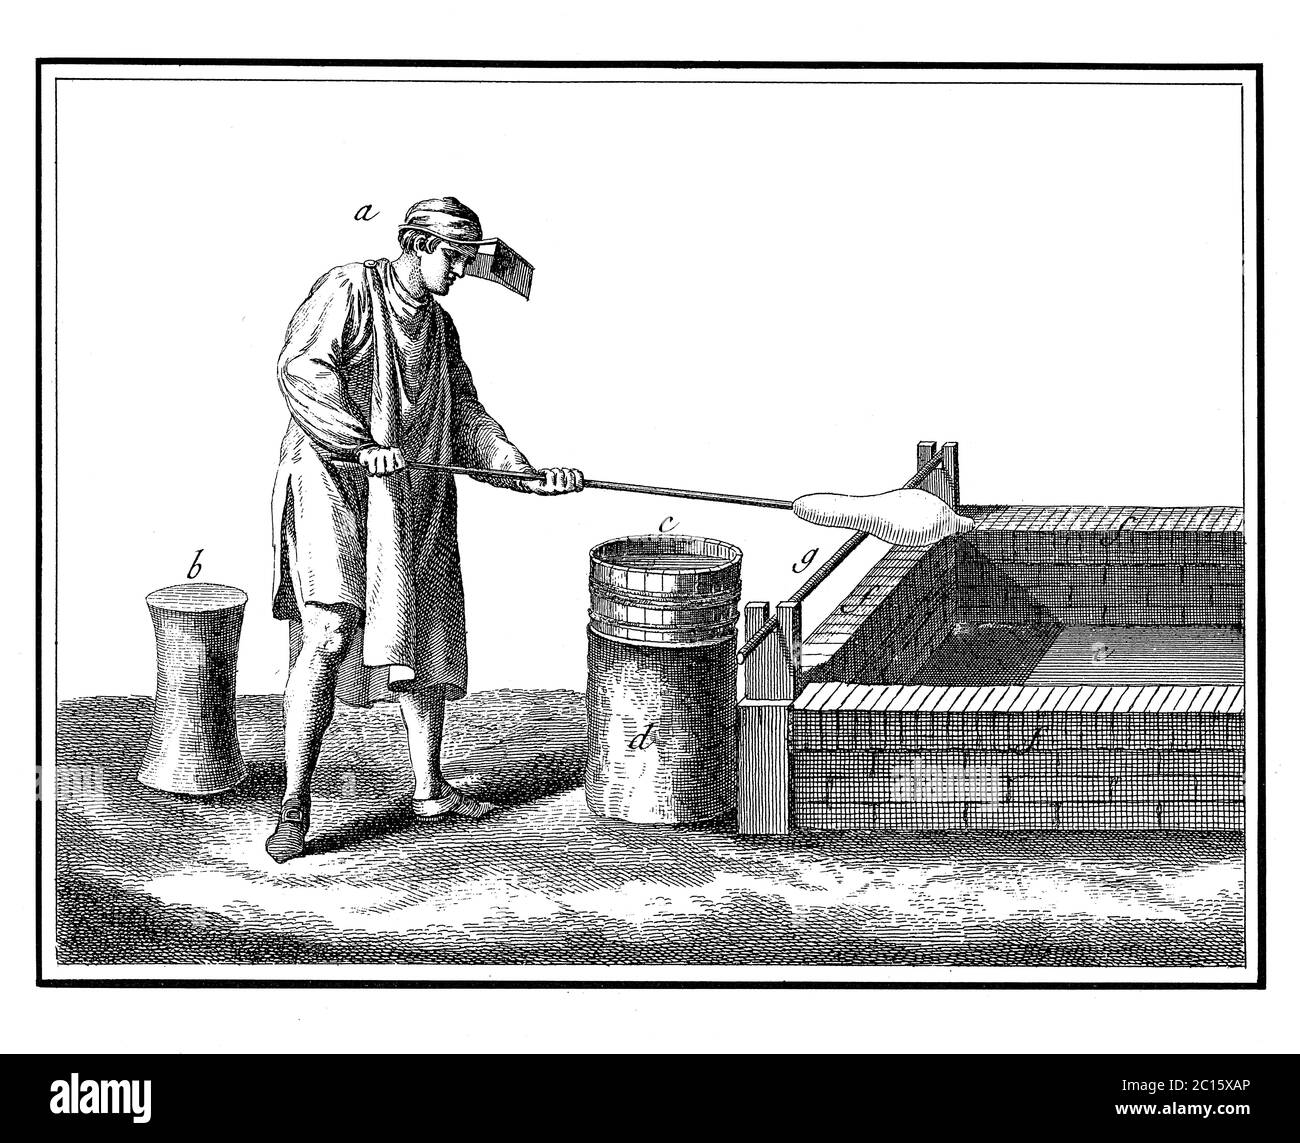 Antike Illustration, wie der Bläser den bosse zu einem Blastrog bringt, wo er einen Hals beginnt. Veröffentlicht in 'A Diderot bildliche Enzyklopädie von T Stockfoto